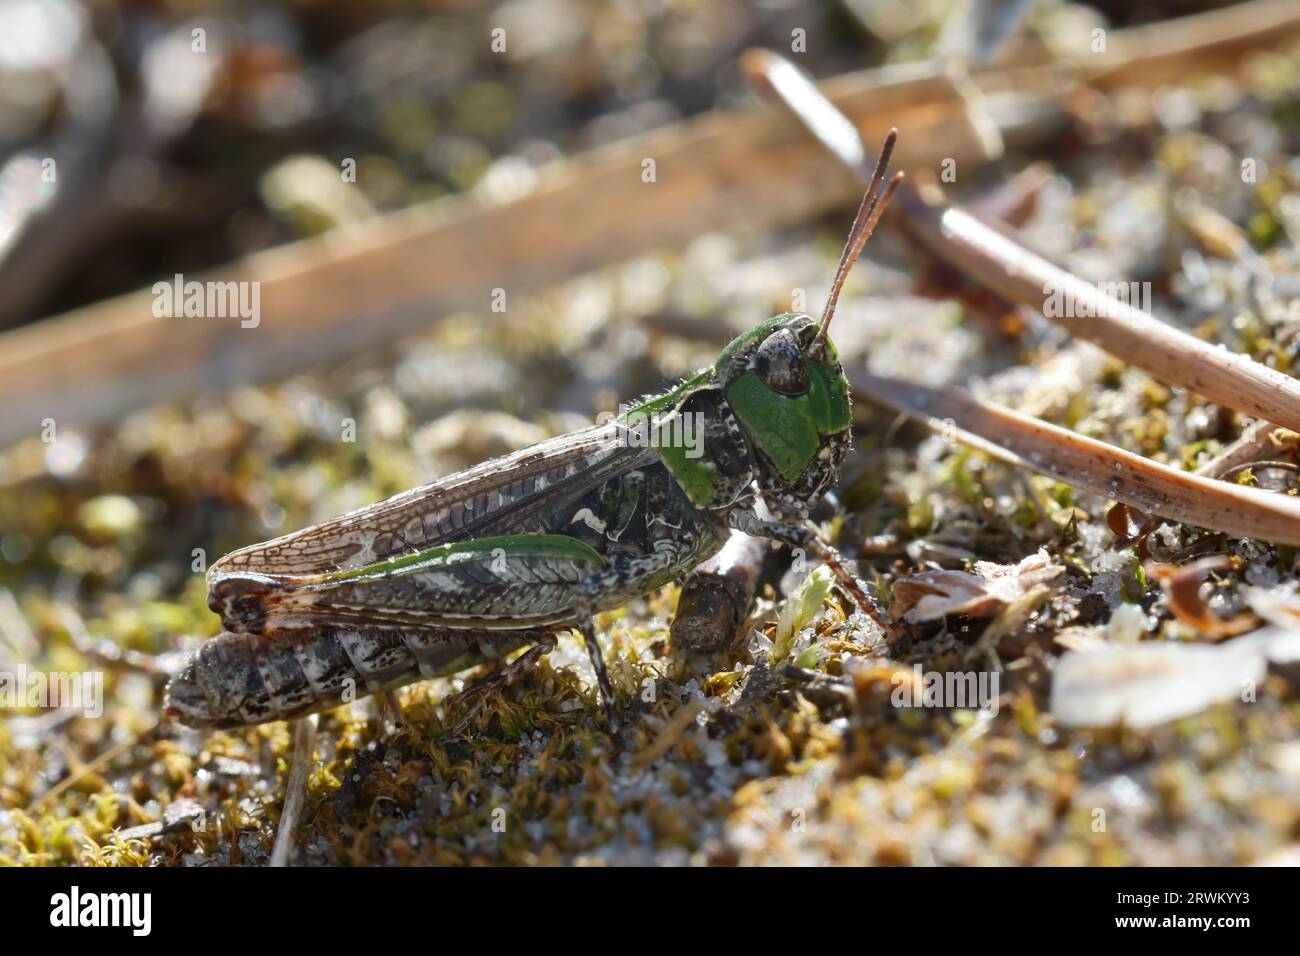 Gefleckte Keulenschrecke, Keulenschrecke, Weibchen, Myrmeleotettix maculatus, Gomphocerus maculatus, mottled grasshopper, female Stock Photo